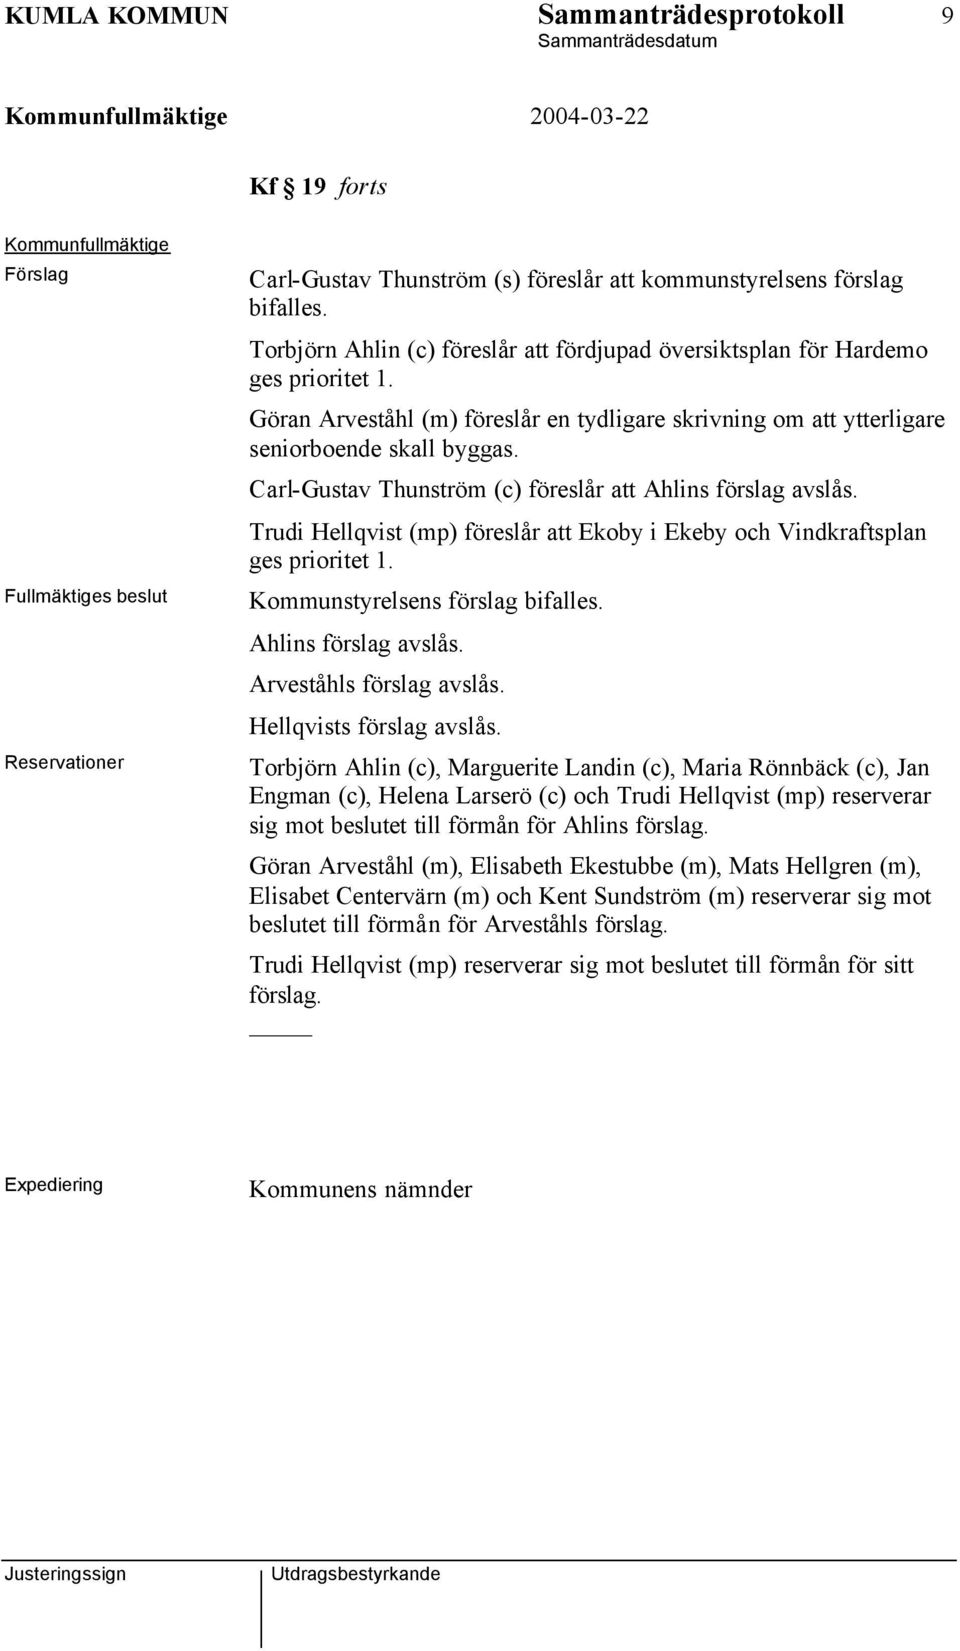 Carl-Gustav Thunström (c) föreslår att Ahlins förslag avslås. Trudi Hellqvist (mp) föreslår att Ekoby i Ekeby och Vindkraftsplan ges prioritet 1. Kommunstyrelsens förslag bifalles.